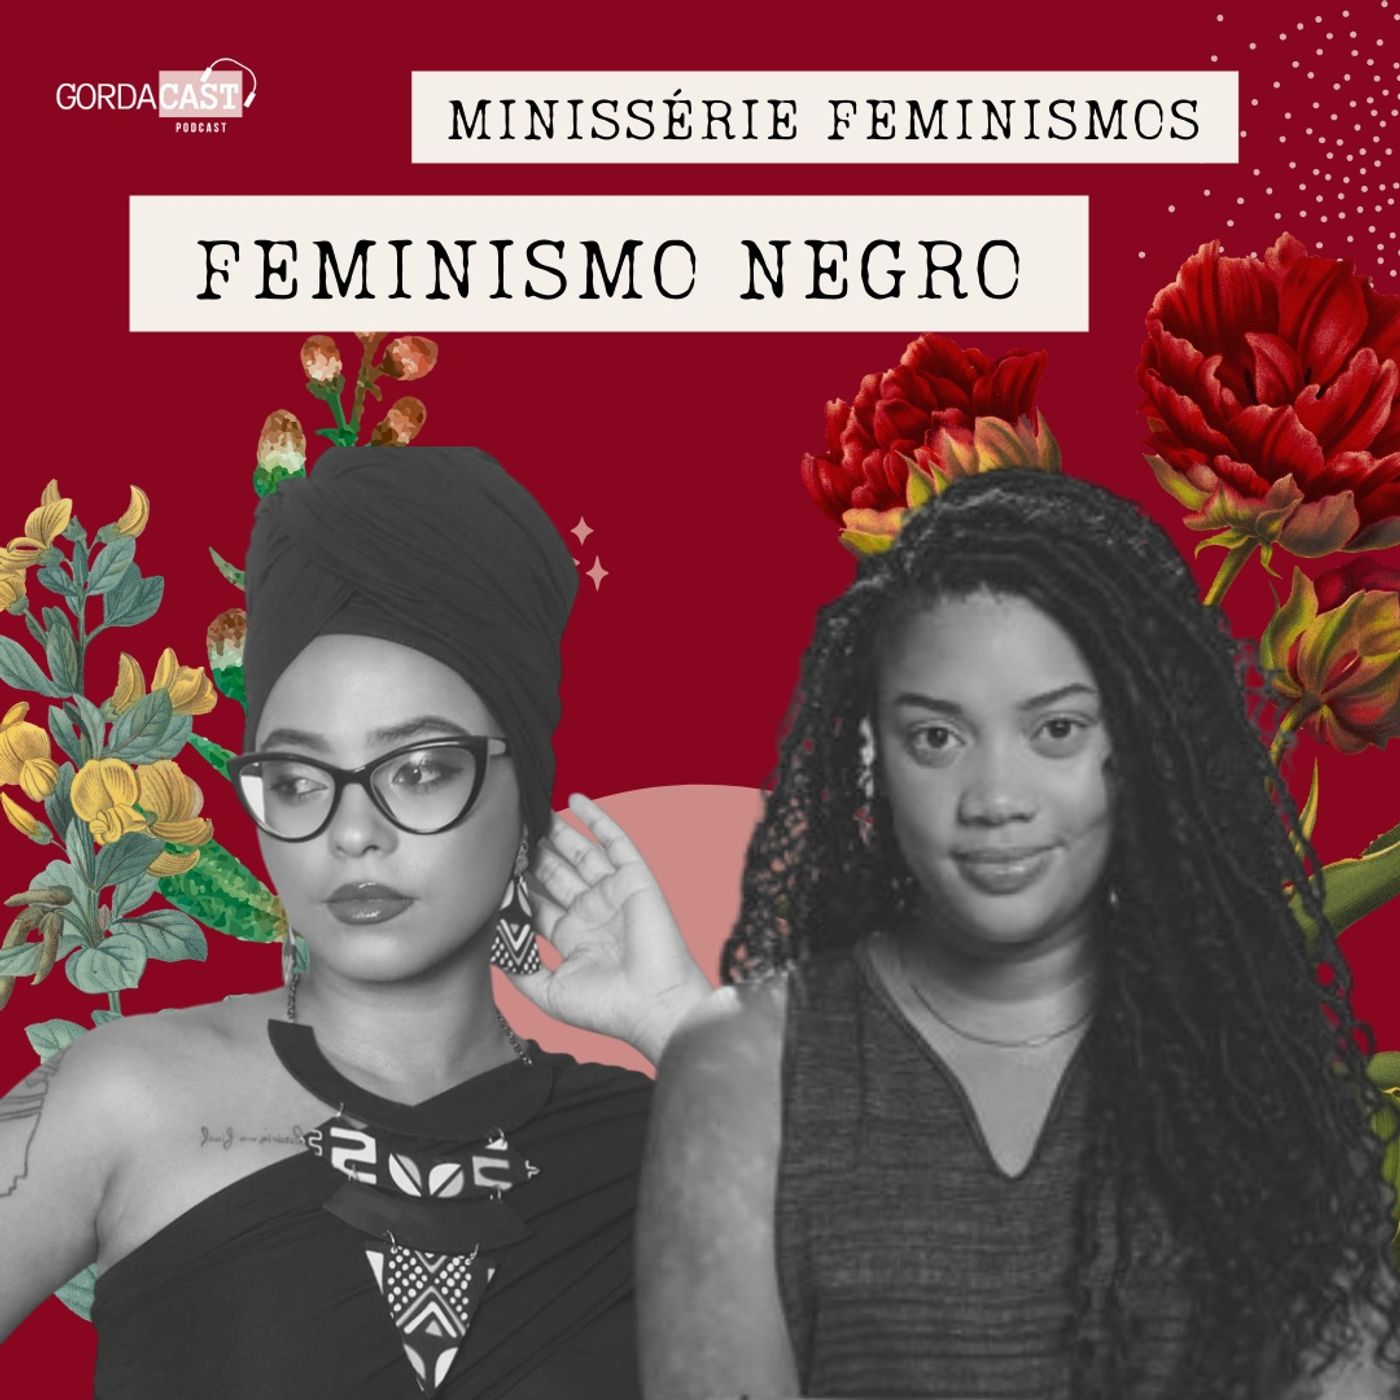 Episódio Feminismo Negro |  Minissérie ‘Feminismos: da autopercepção à elaboração coletiva’